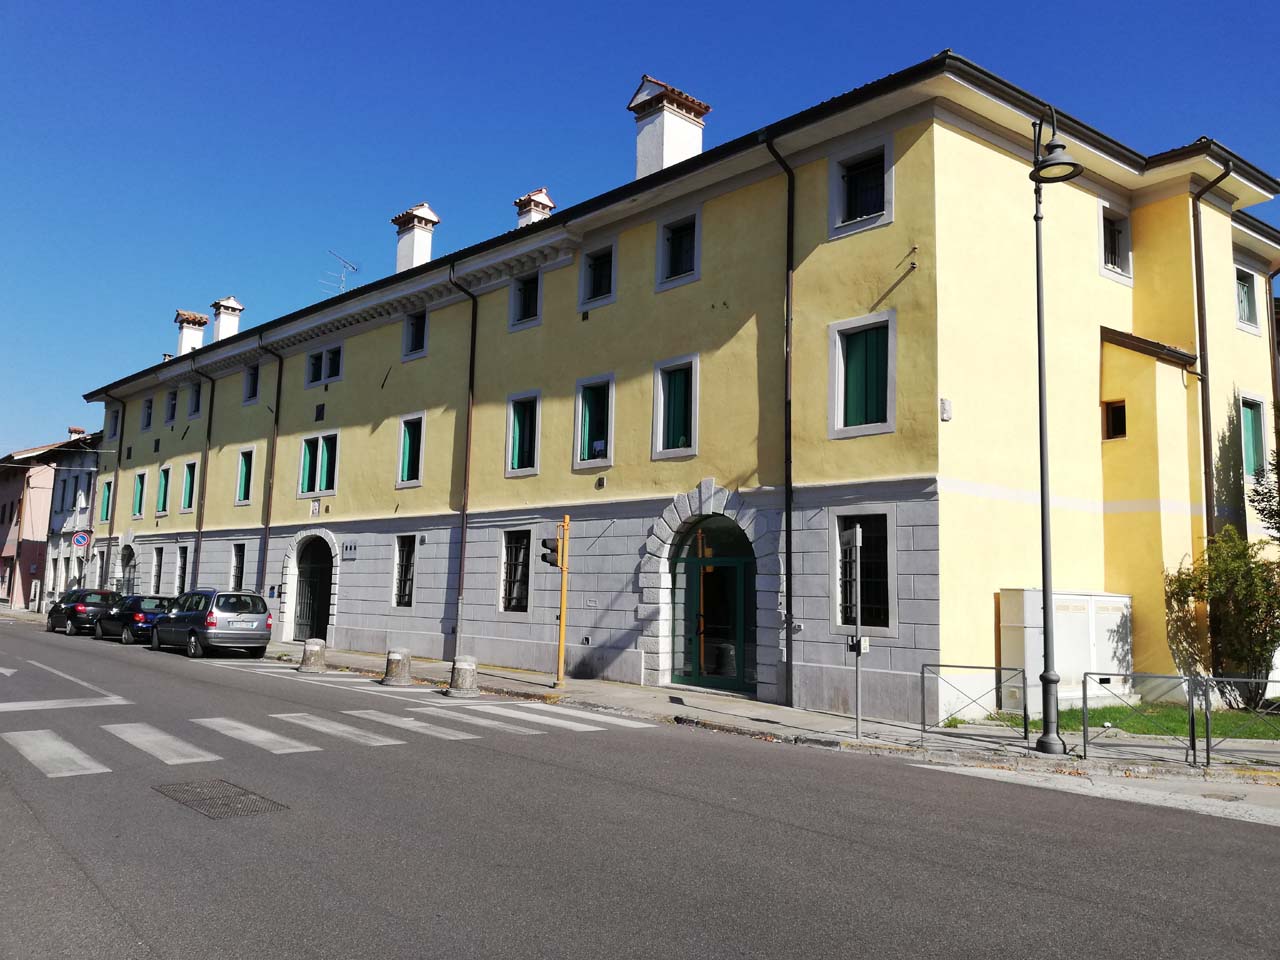 Palazzo Lang (palazzo, nobiliare) - Romans d'Isonzo (GO) 